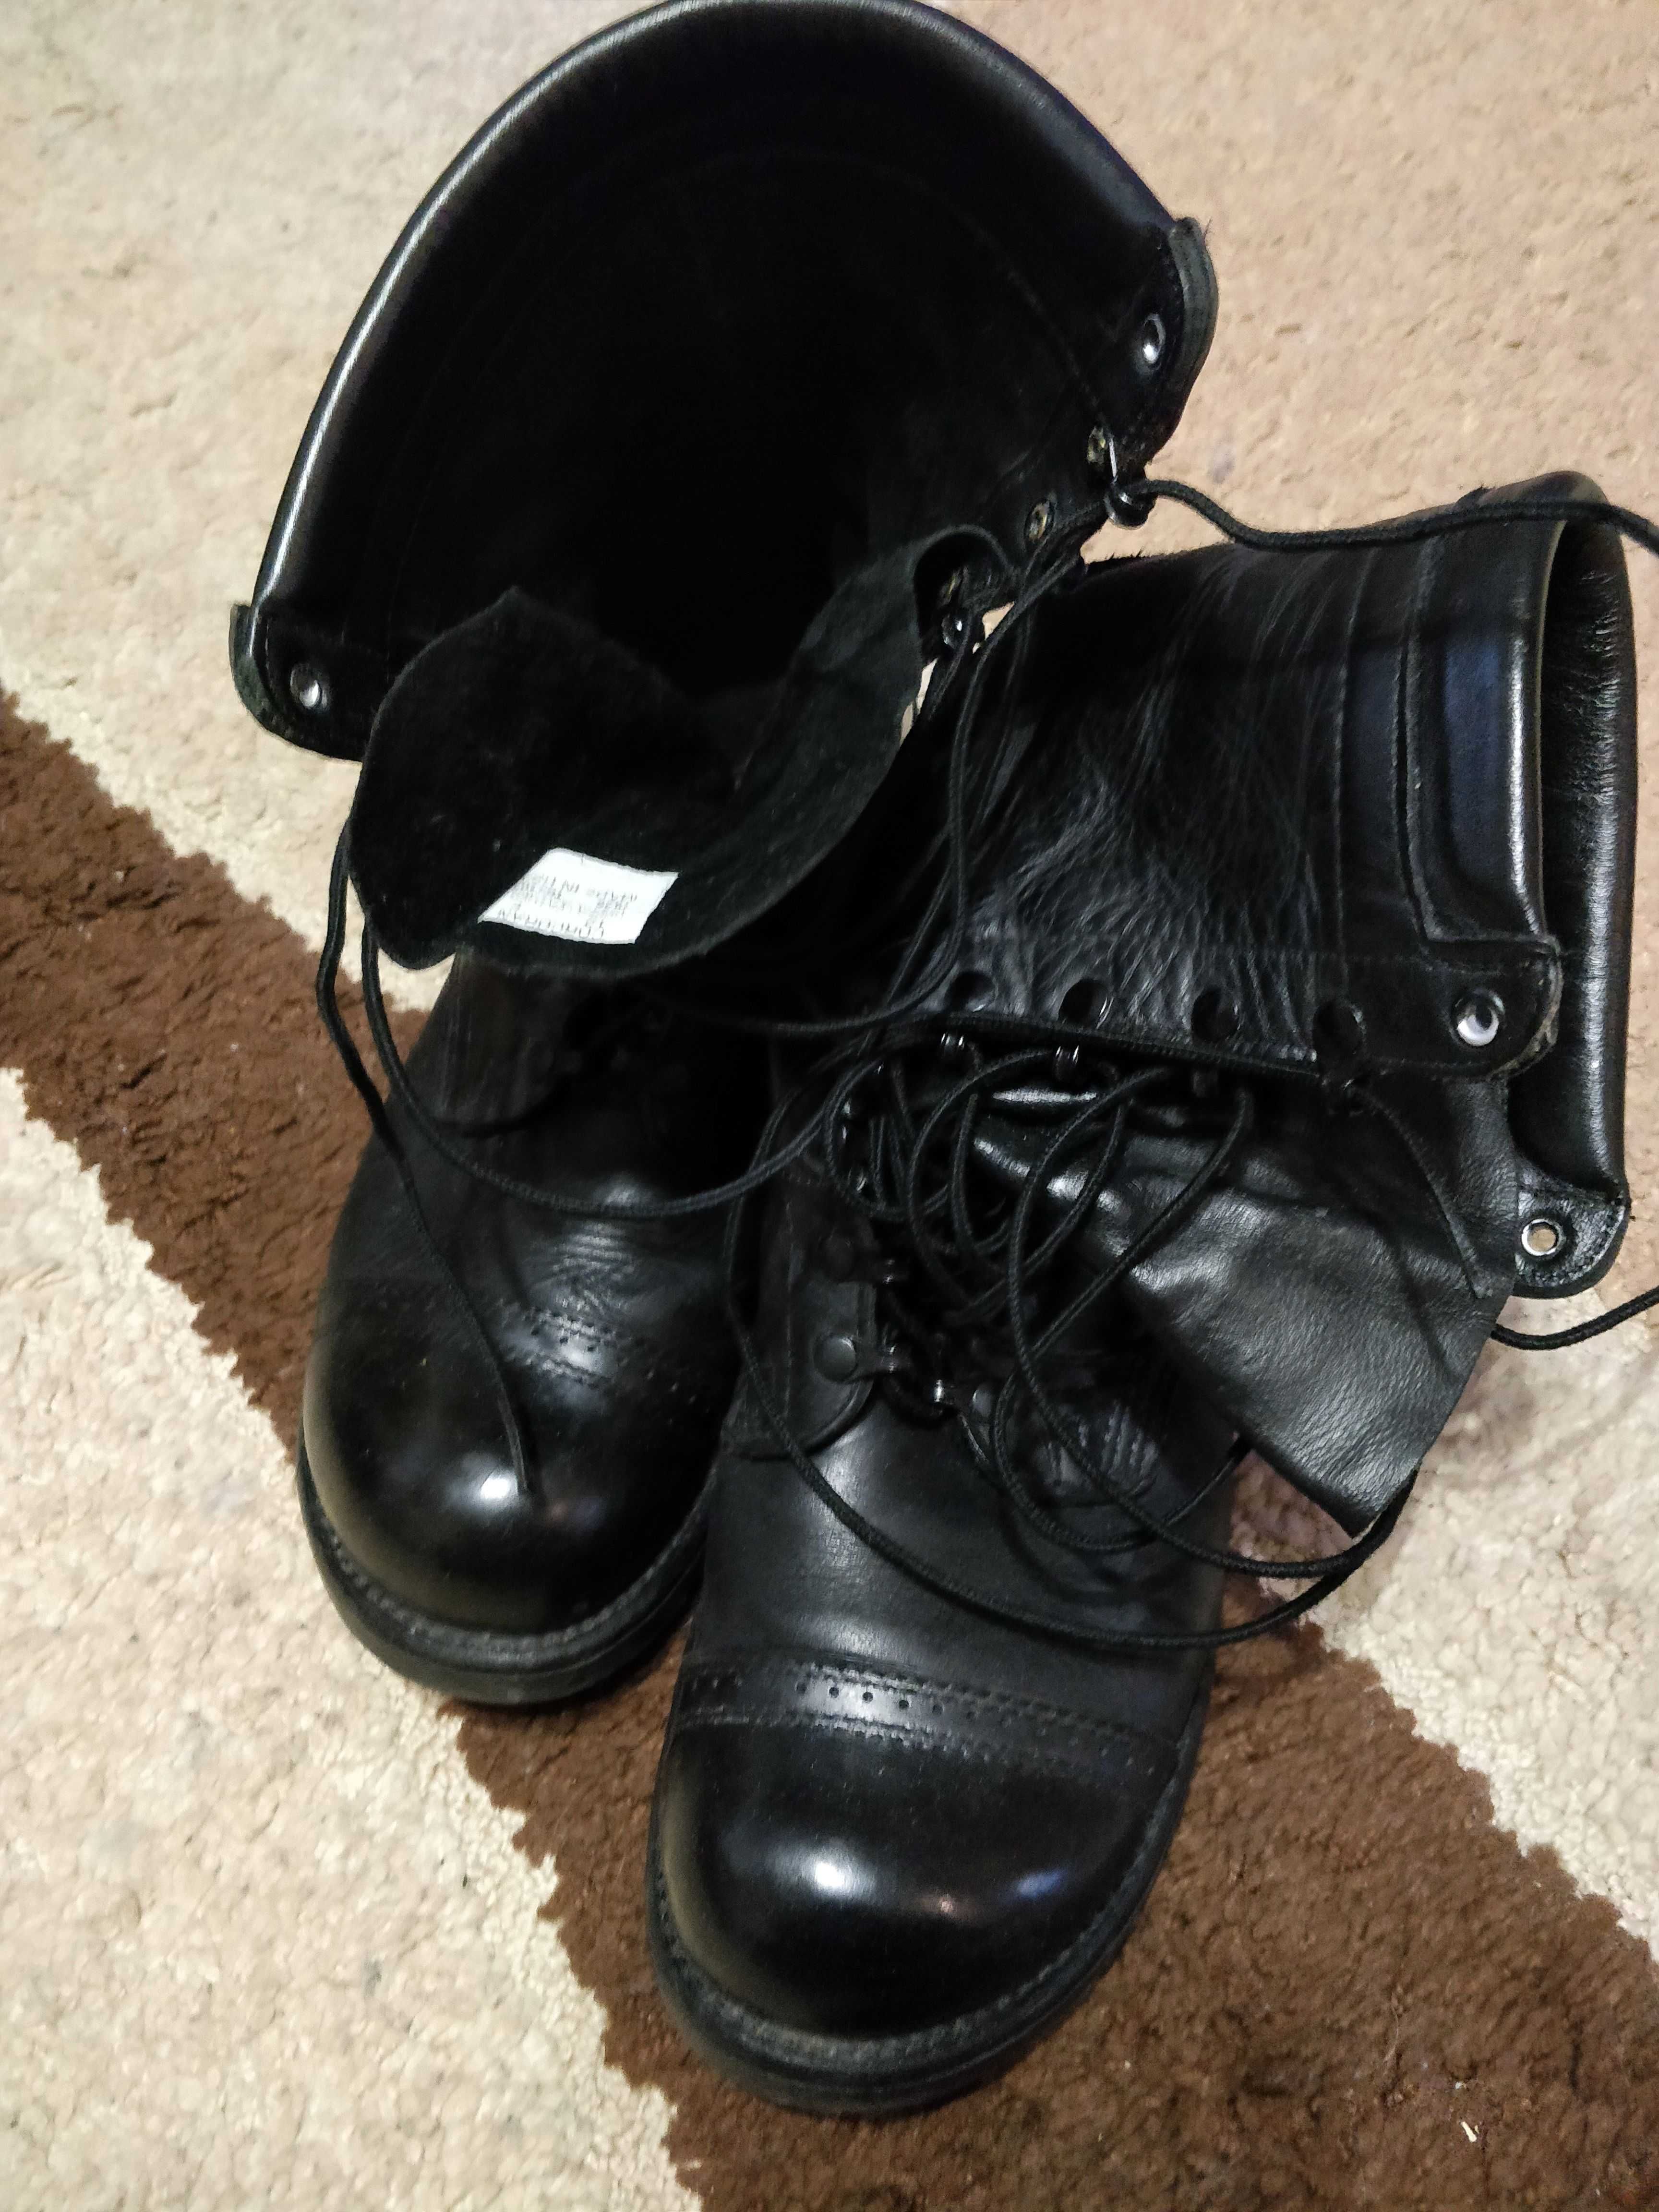 Ботинки Corcoran 1525 Leather Field Boot USA. 12E (31 см)